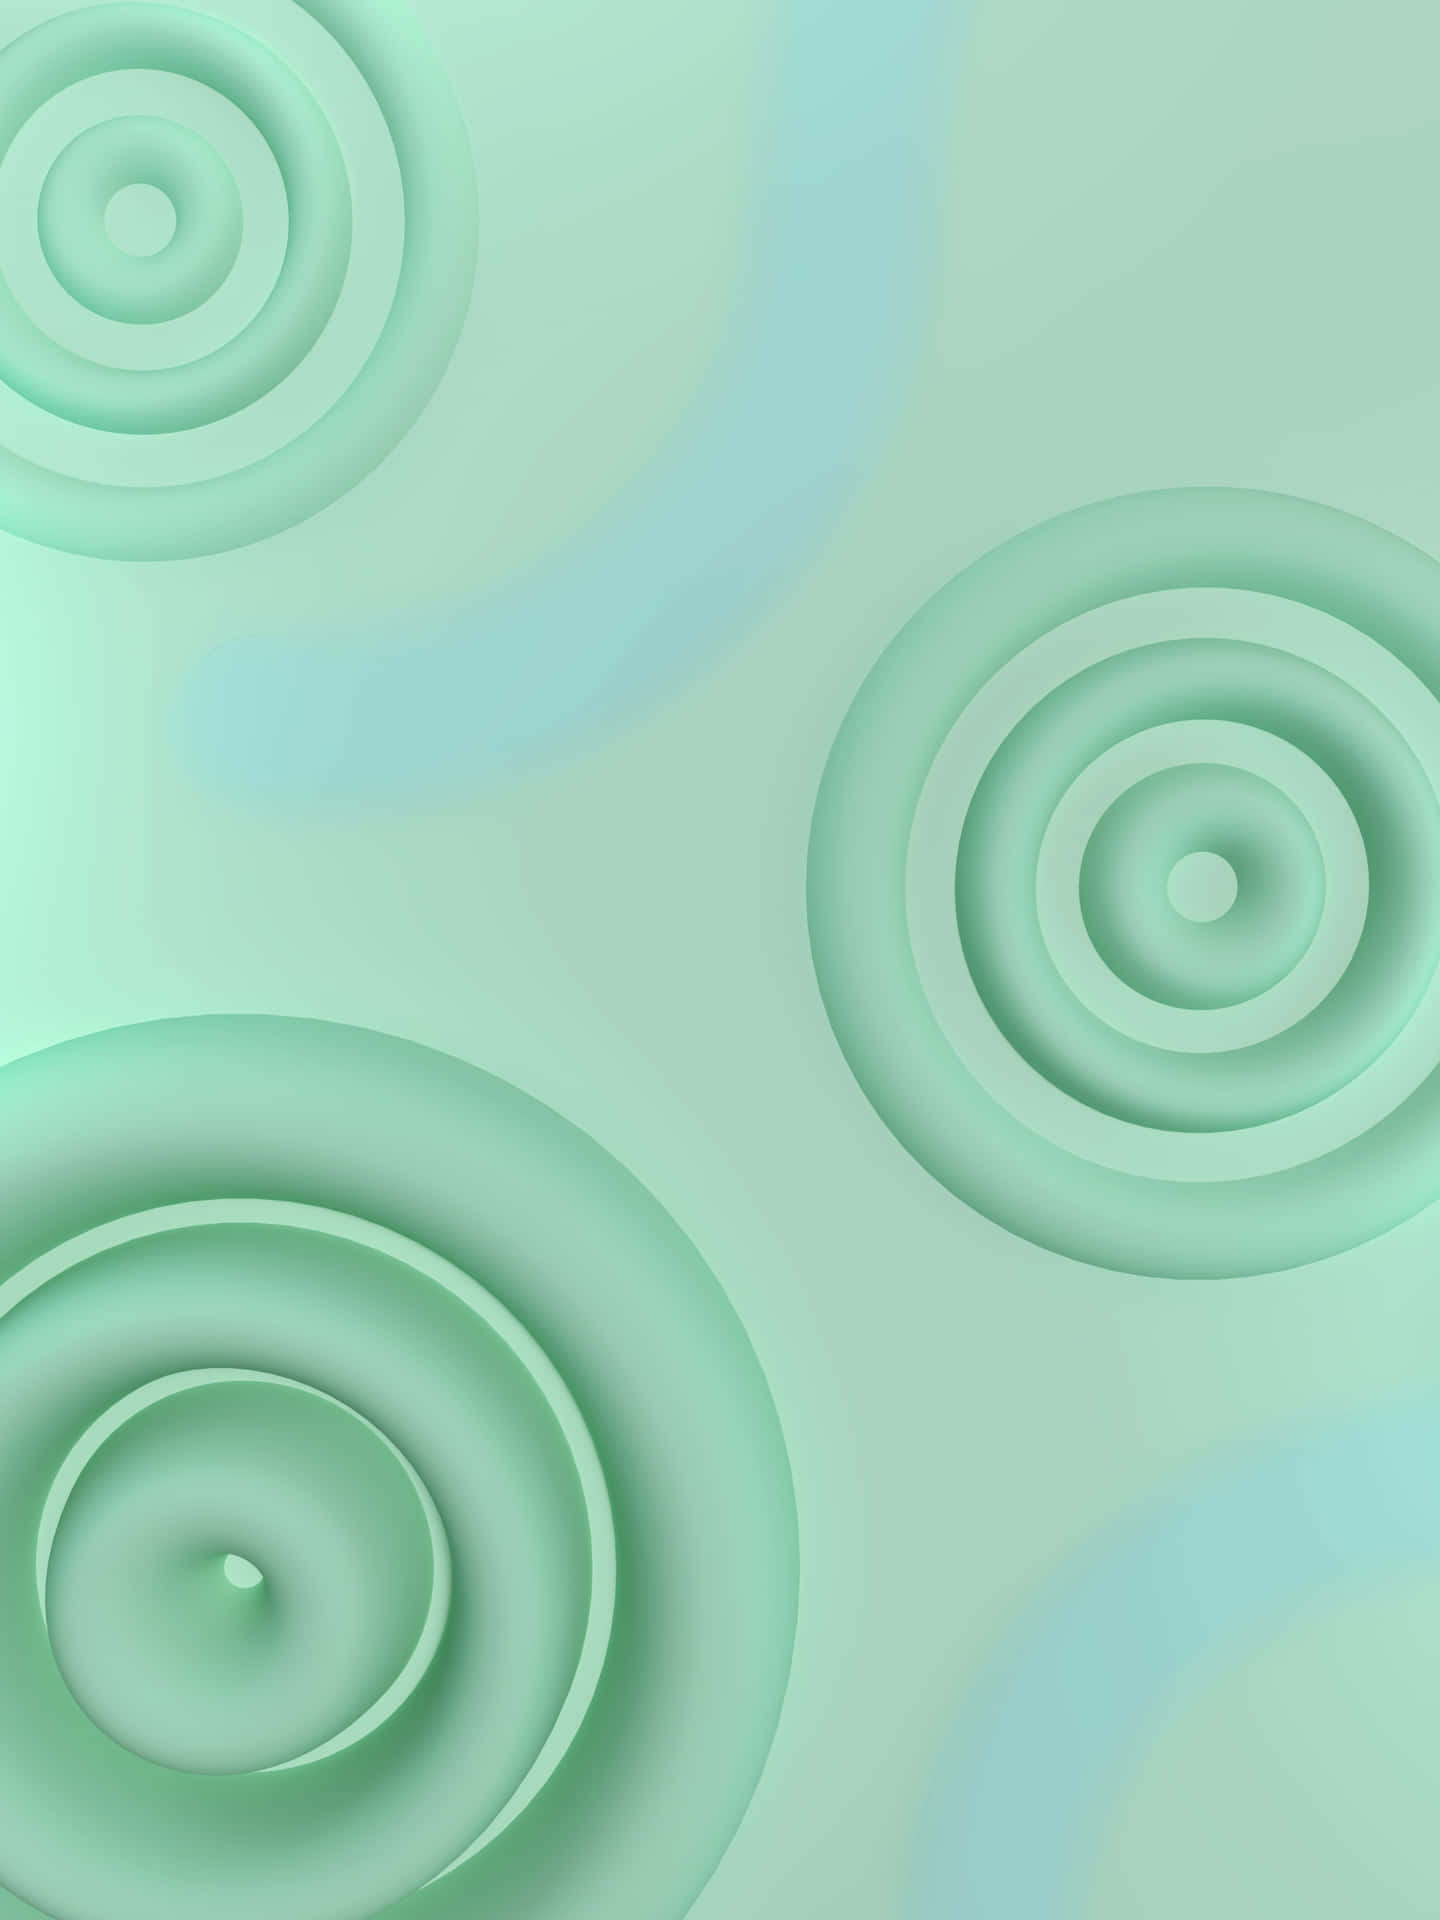 Abstract Seafoam Green Waves Wallpaper Wallpaper